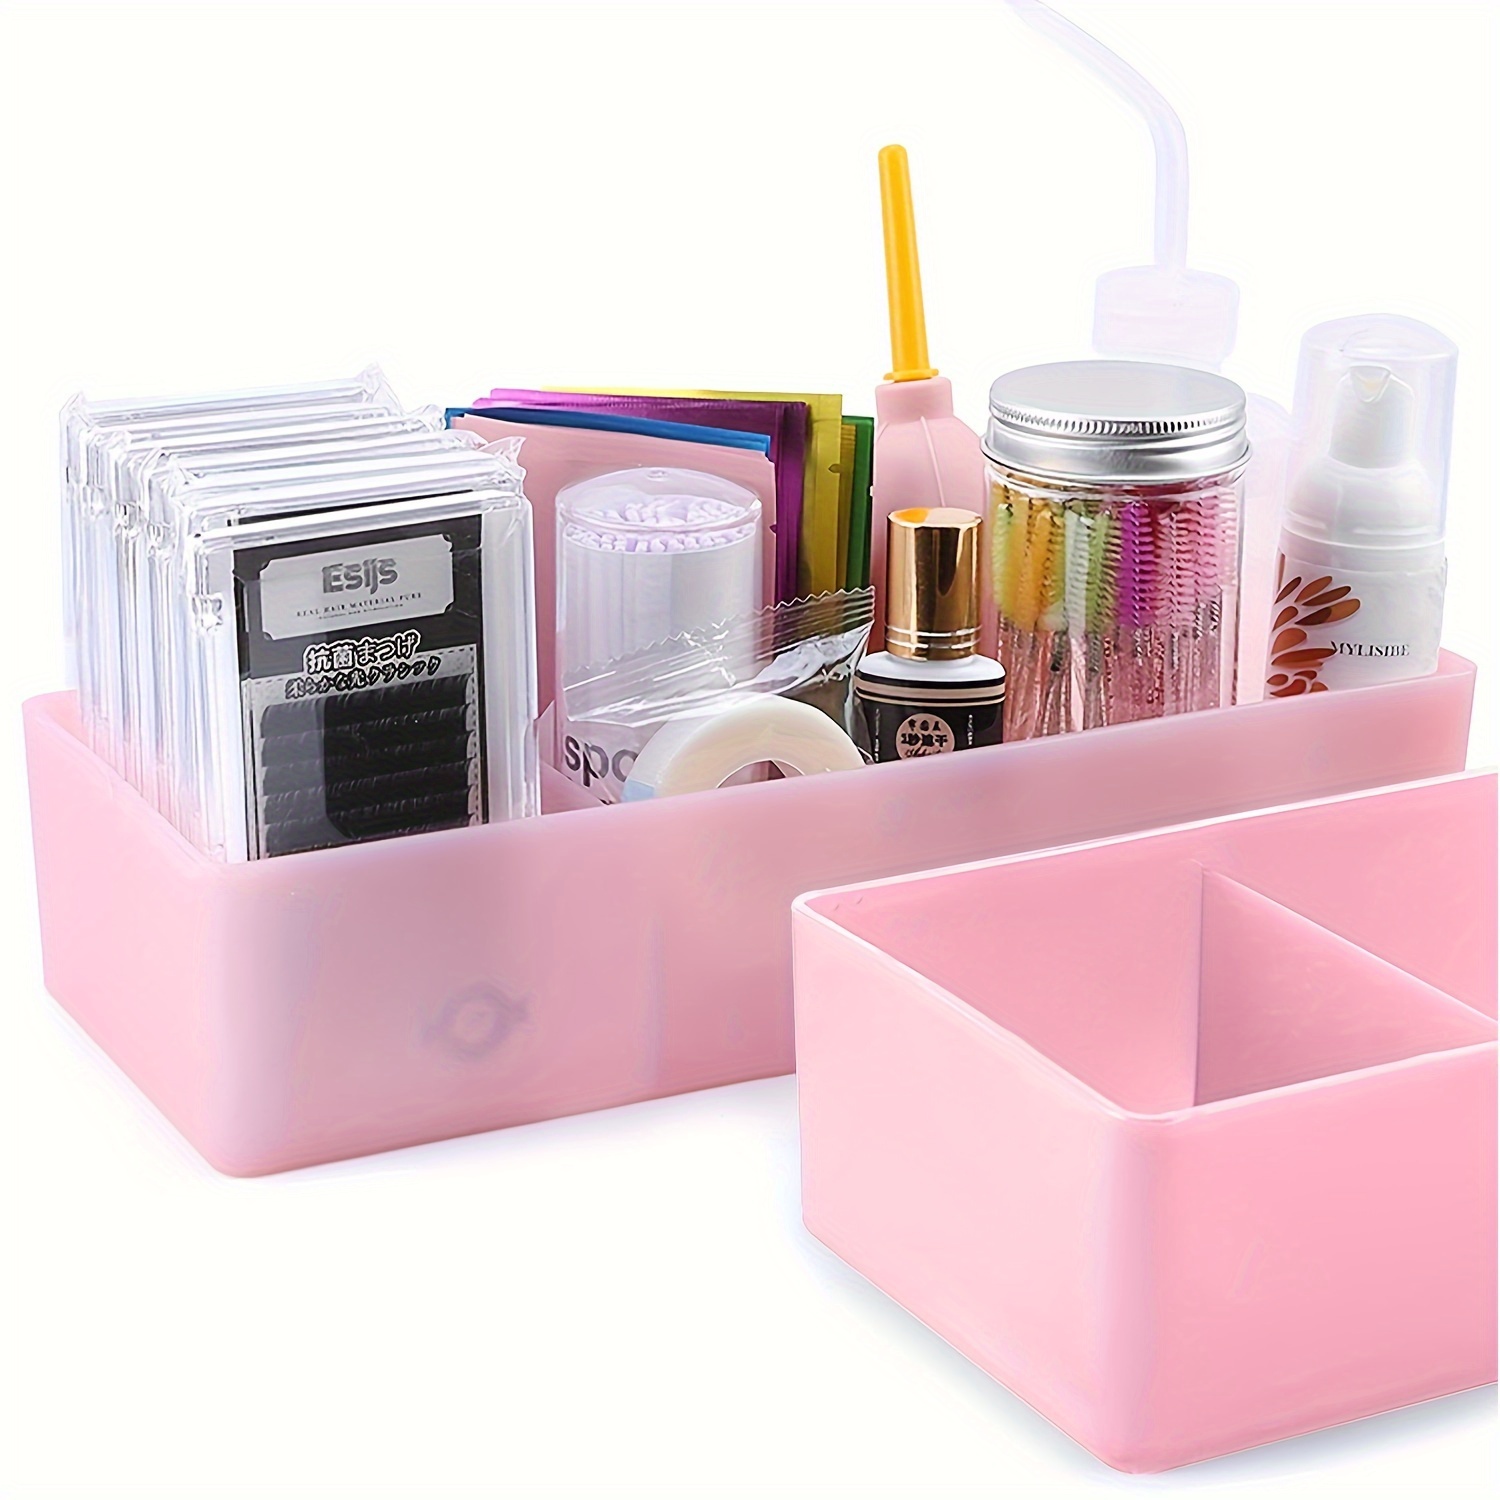 

Large False Eyelash Storage Box For Eyelash Extension Tool Tweezers Makeup & Lash Accessories Sorting Desktop Cosmetics Organizer